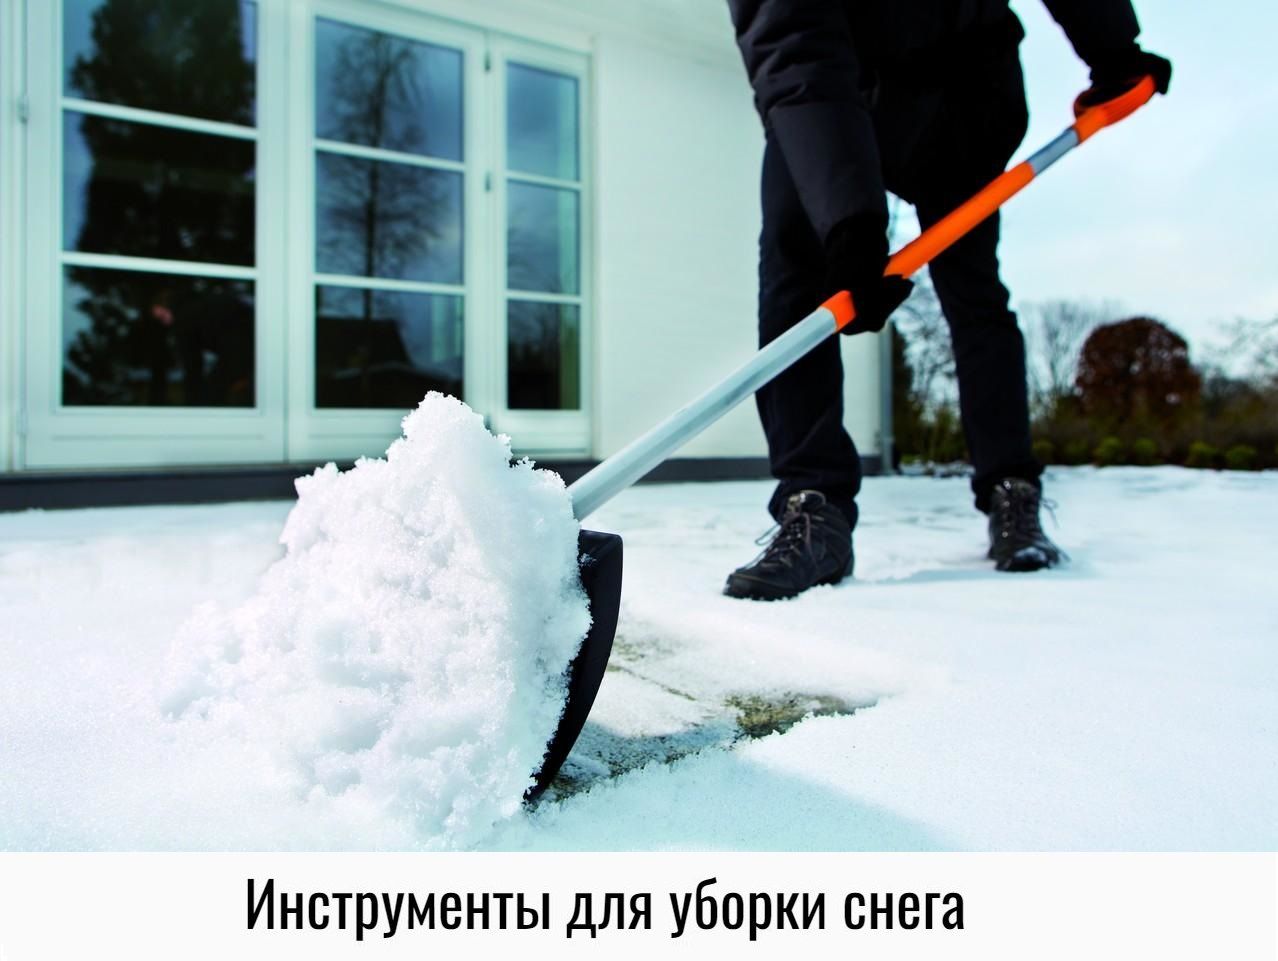 Очиститься снега. Уборка снега. Убирает снег. Лопата для снега. Уборкака снега.